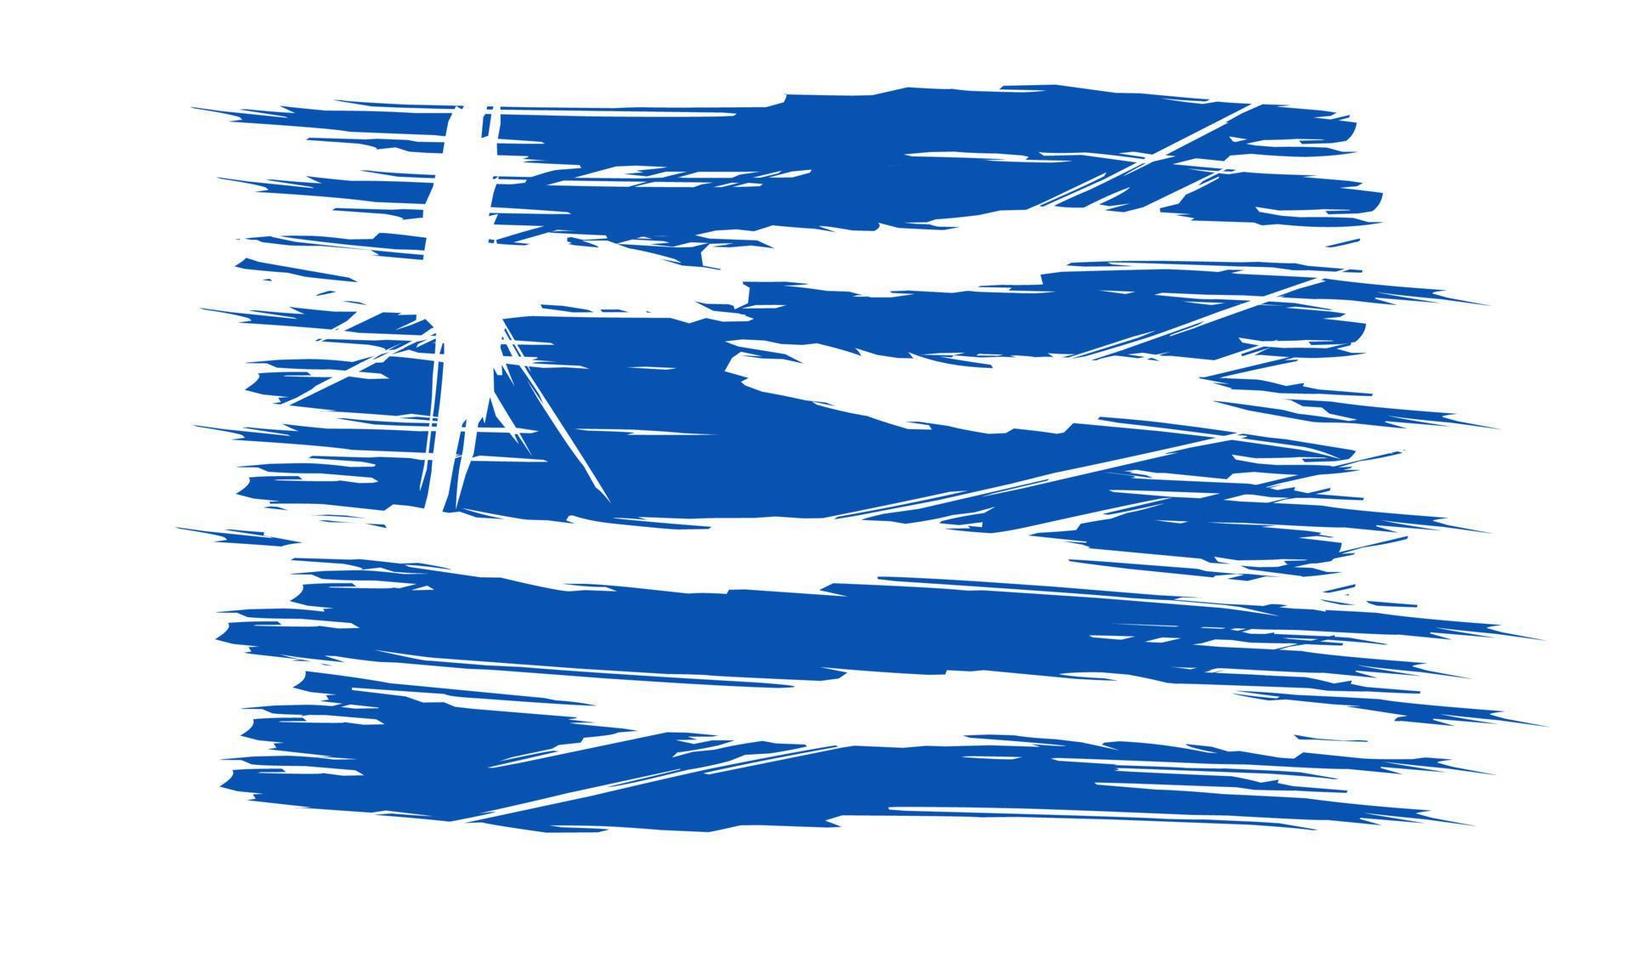 Griekenland vlag ontwerp illustratie, gemakkelijk ontwerp met elegant concept vector